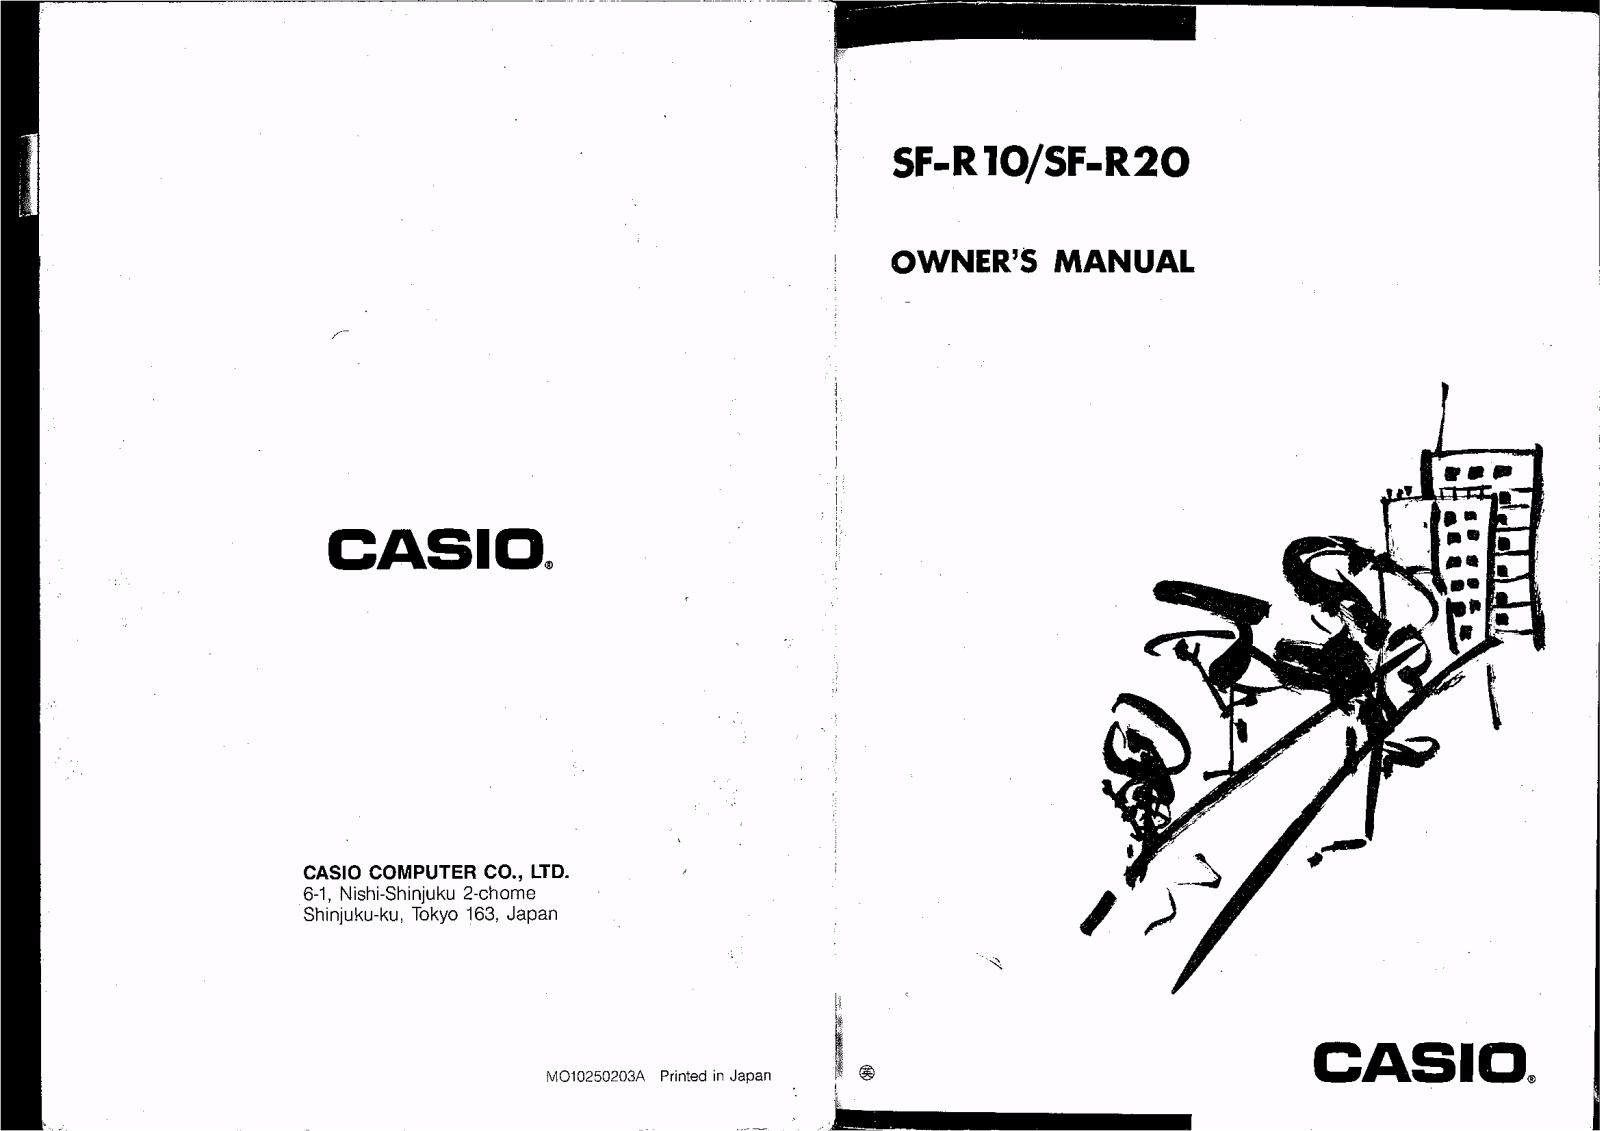 Casio SF-R10, SF-R20 User Manual